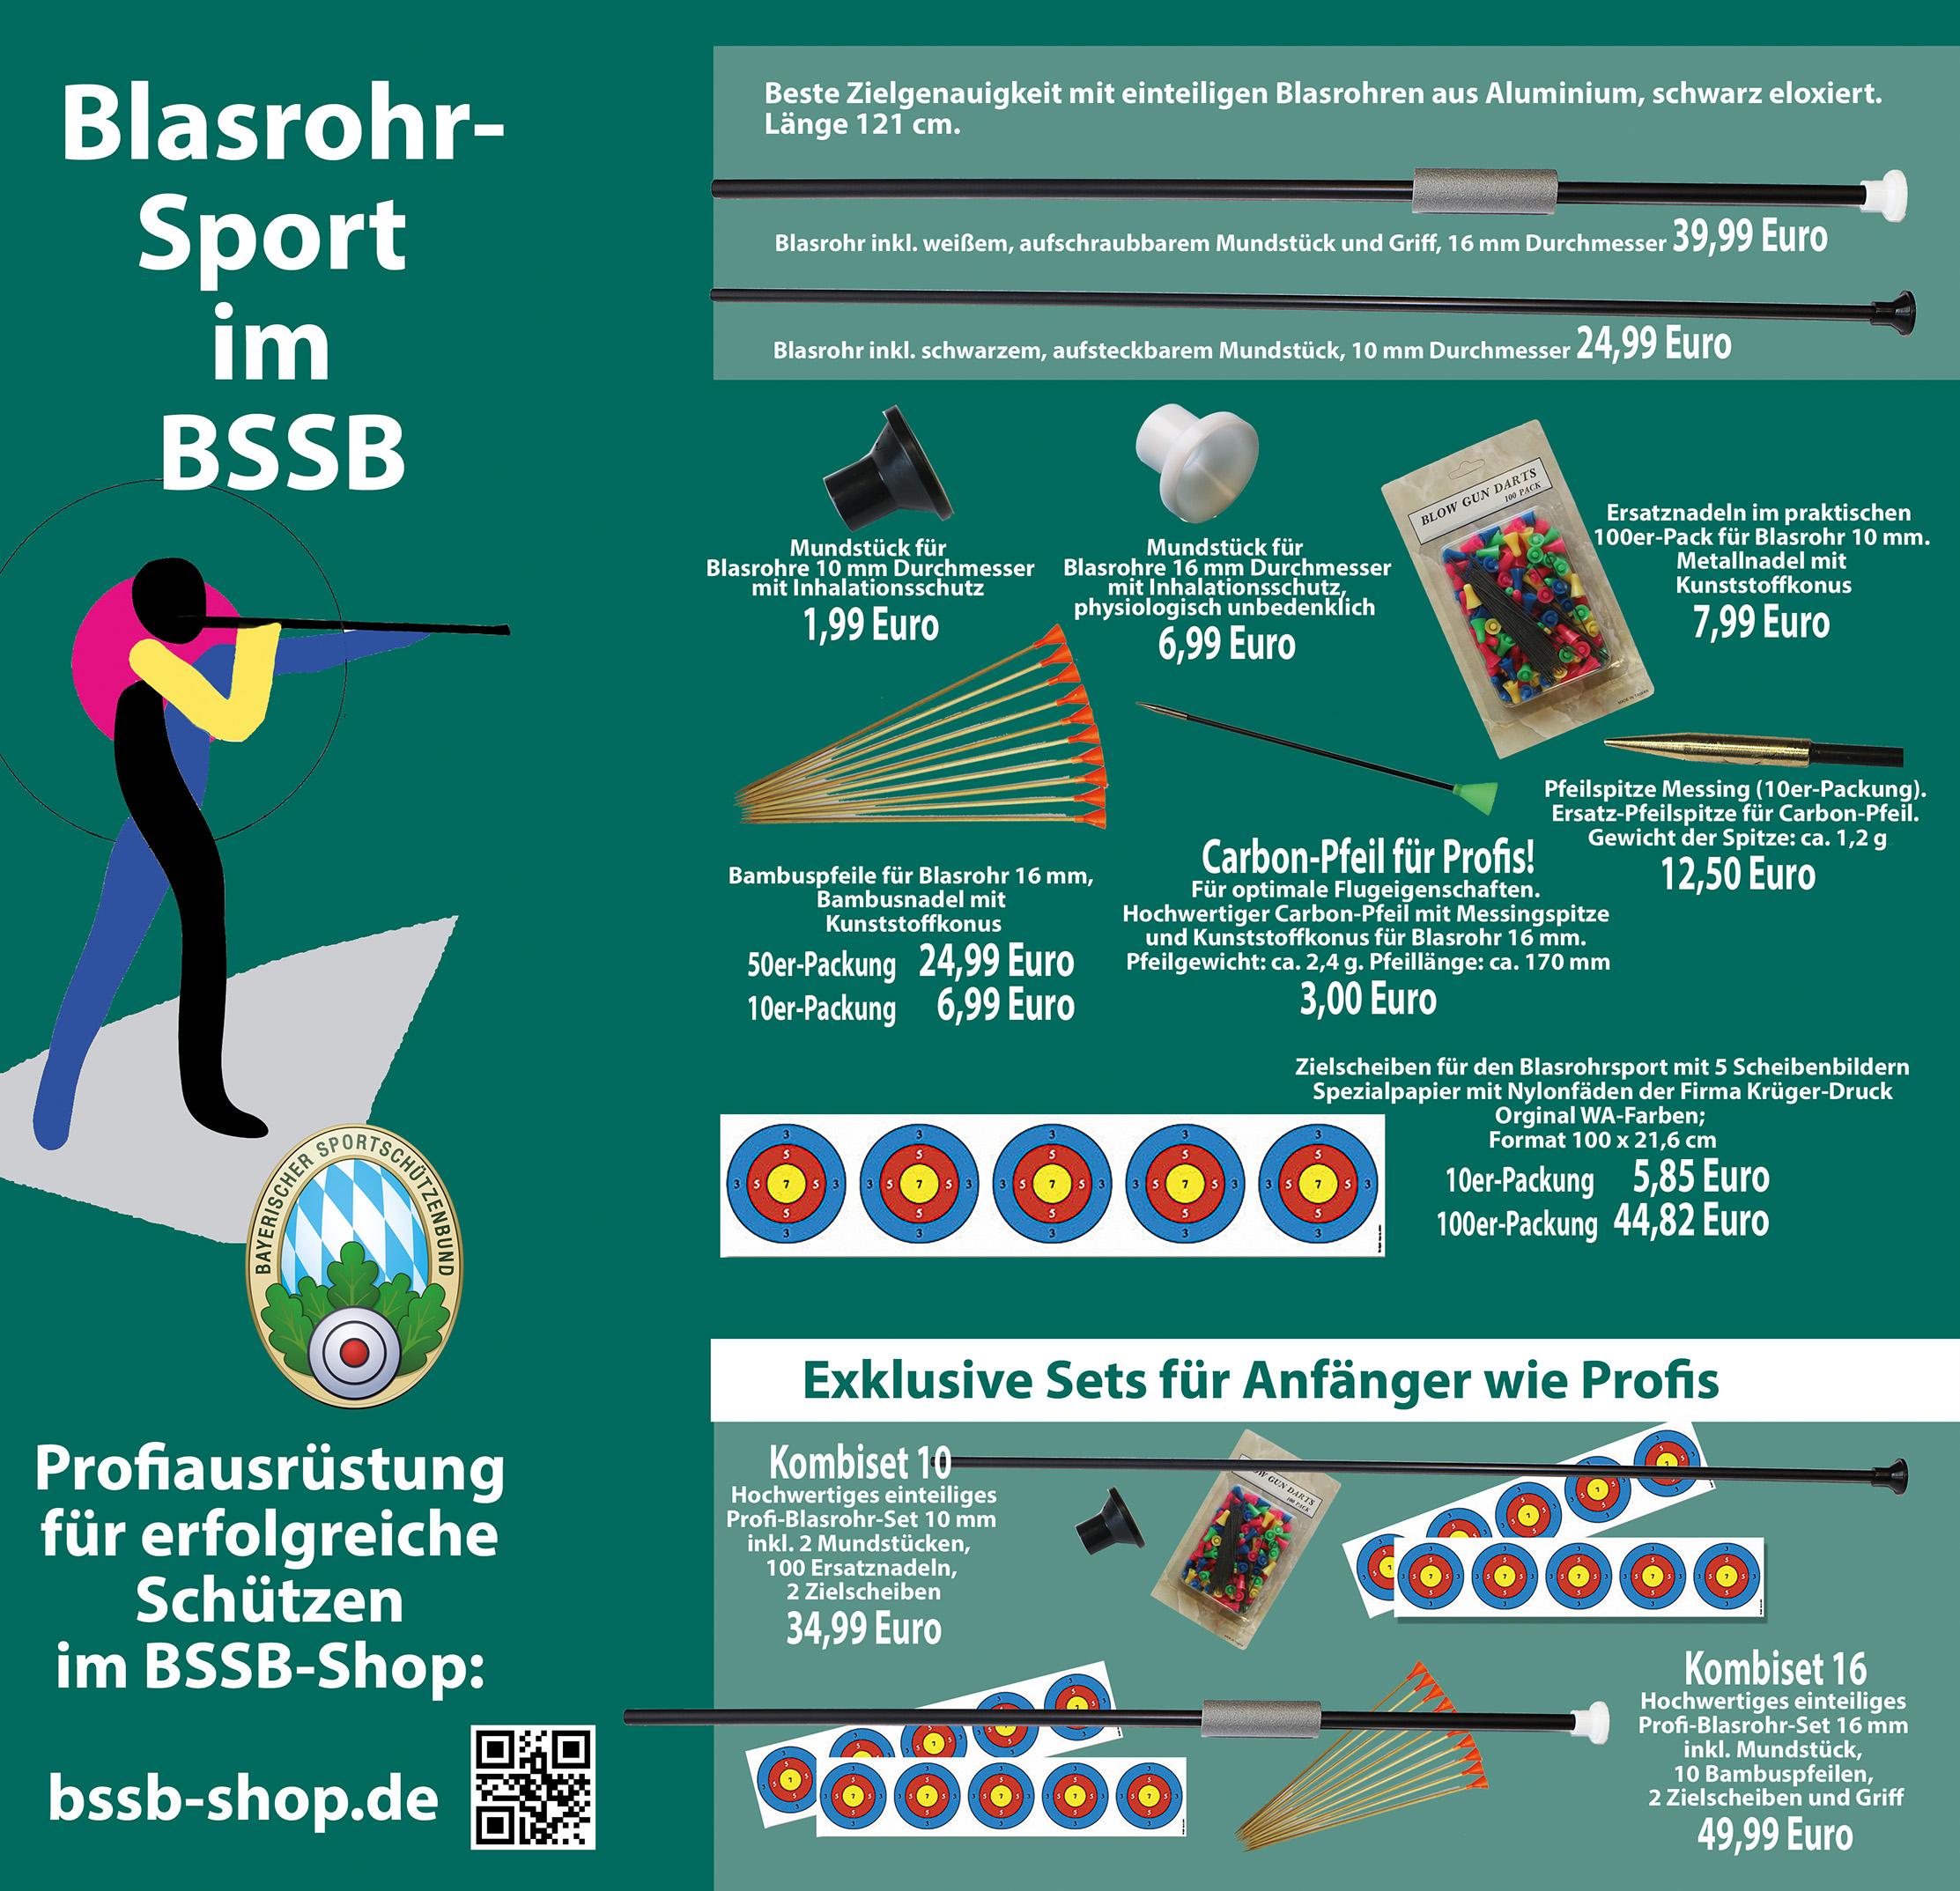 Blasrohr-Sport im BSSB